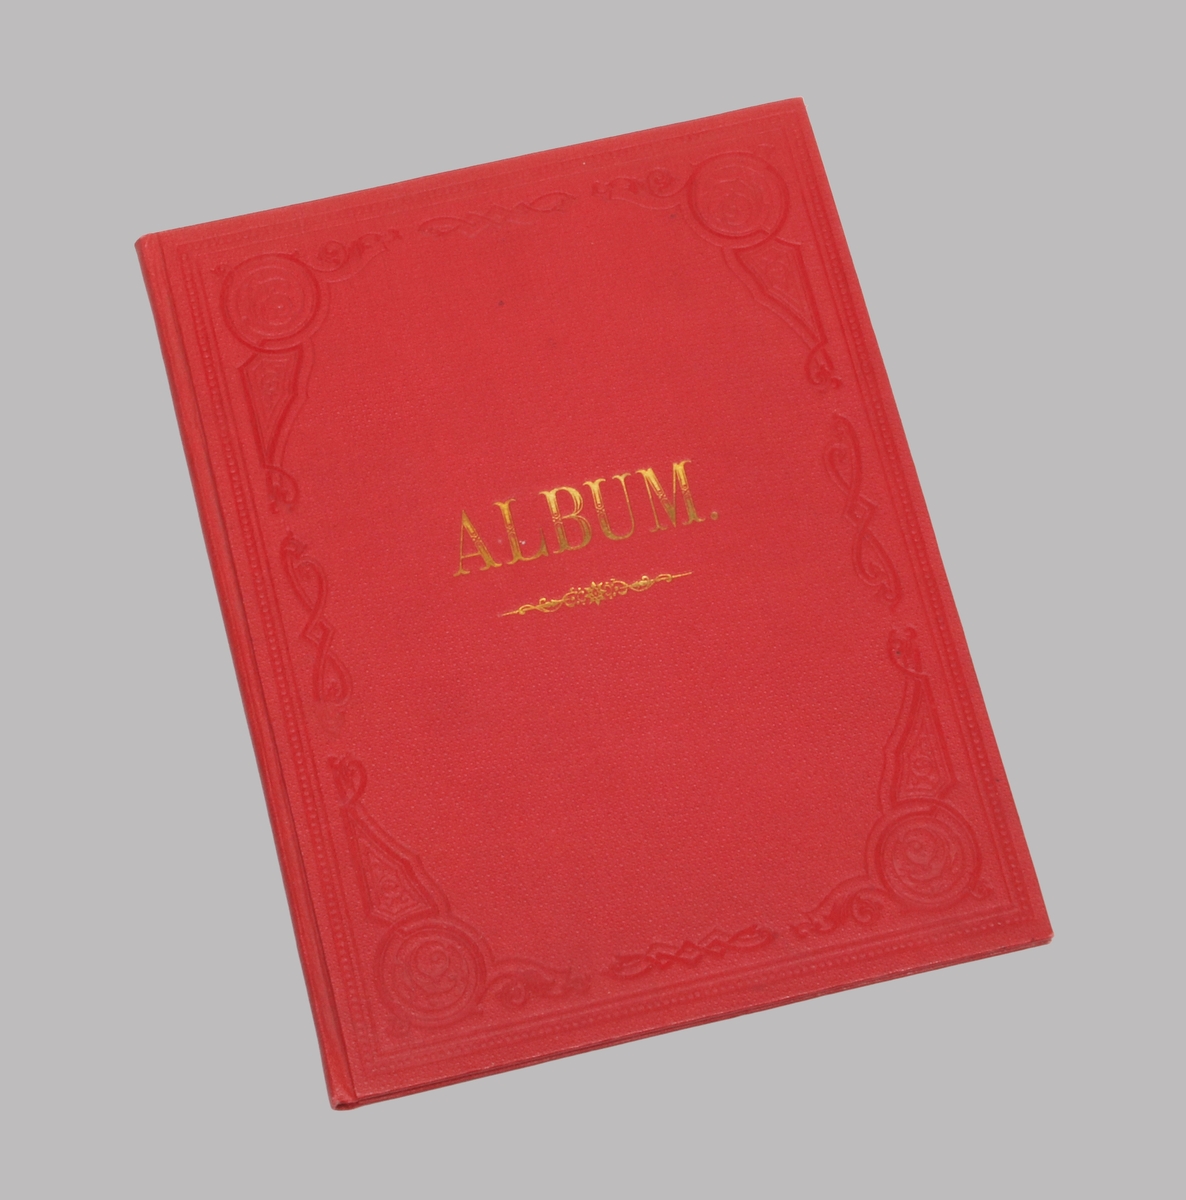 Rött album, med präglad ornamentik runt om. På omslaget märkt i guld: "ALBUM". På insidan klistrade bildmärken i olika former och färger.

Album, troligtvis något senare ?